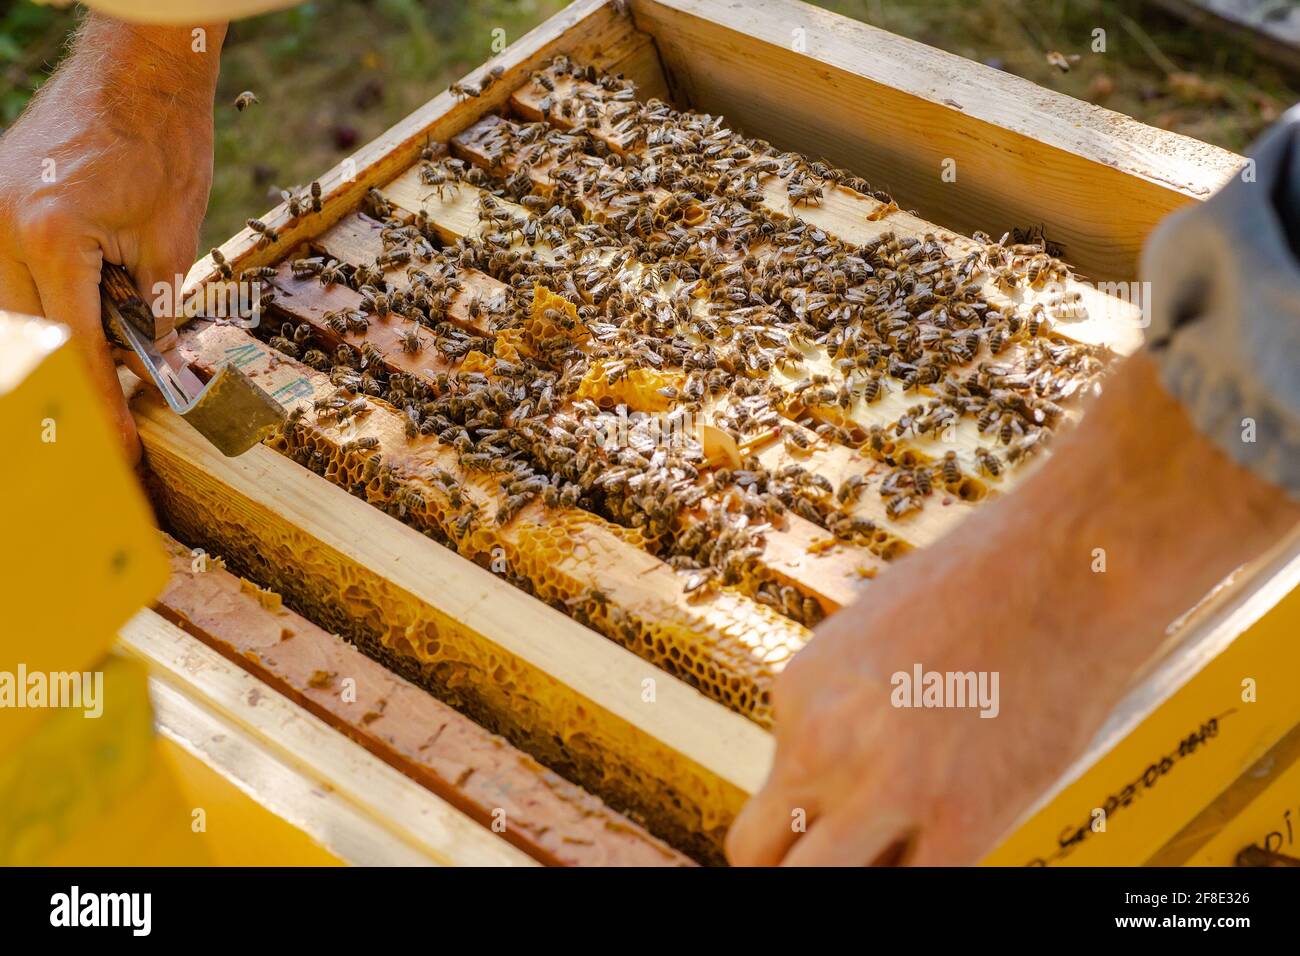 l'apiculteur pousse le cadre du burin. L'homme supervise la production de miel dans l'abeille. Cadres en bois visibles. Les cadres sont recouverts d'essaim d'abeilles Banque D'Images